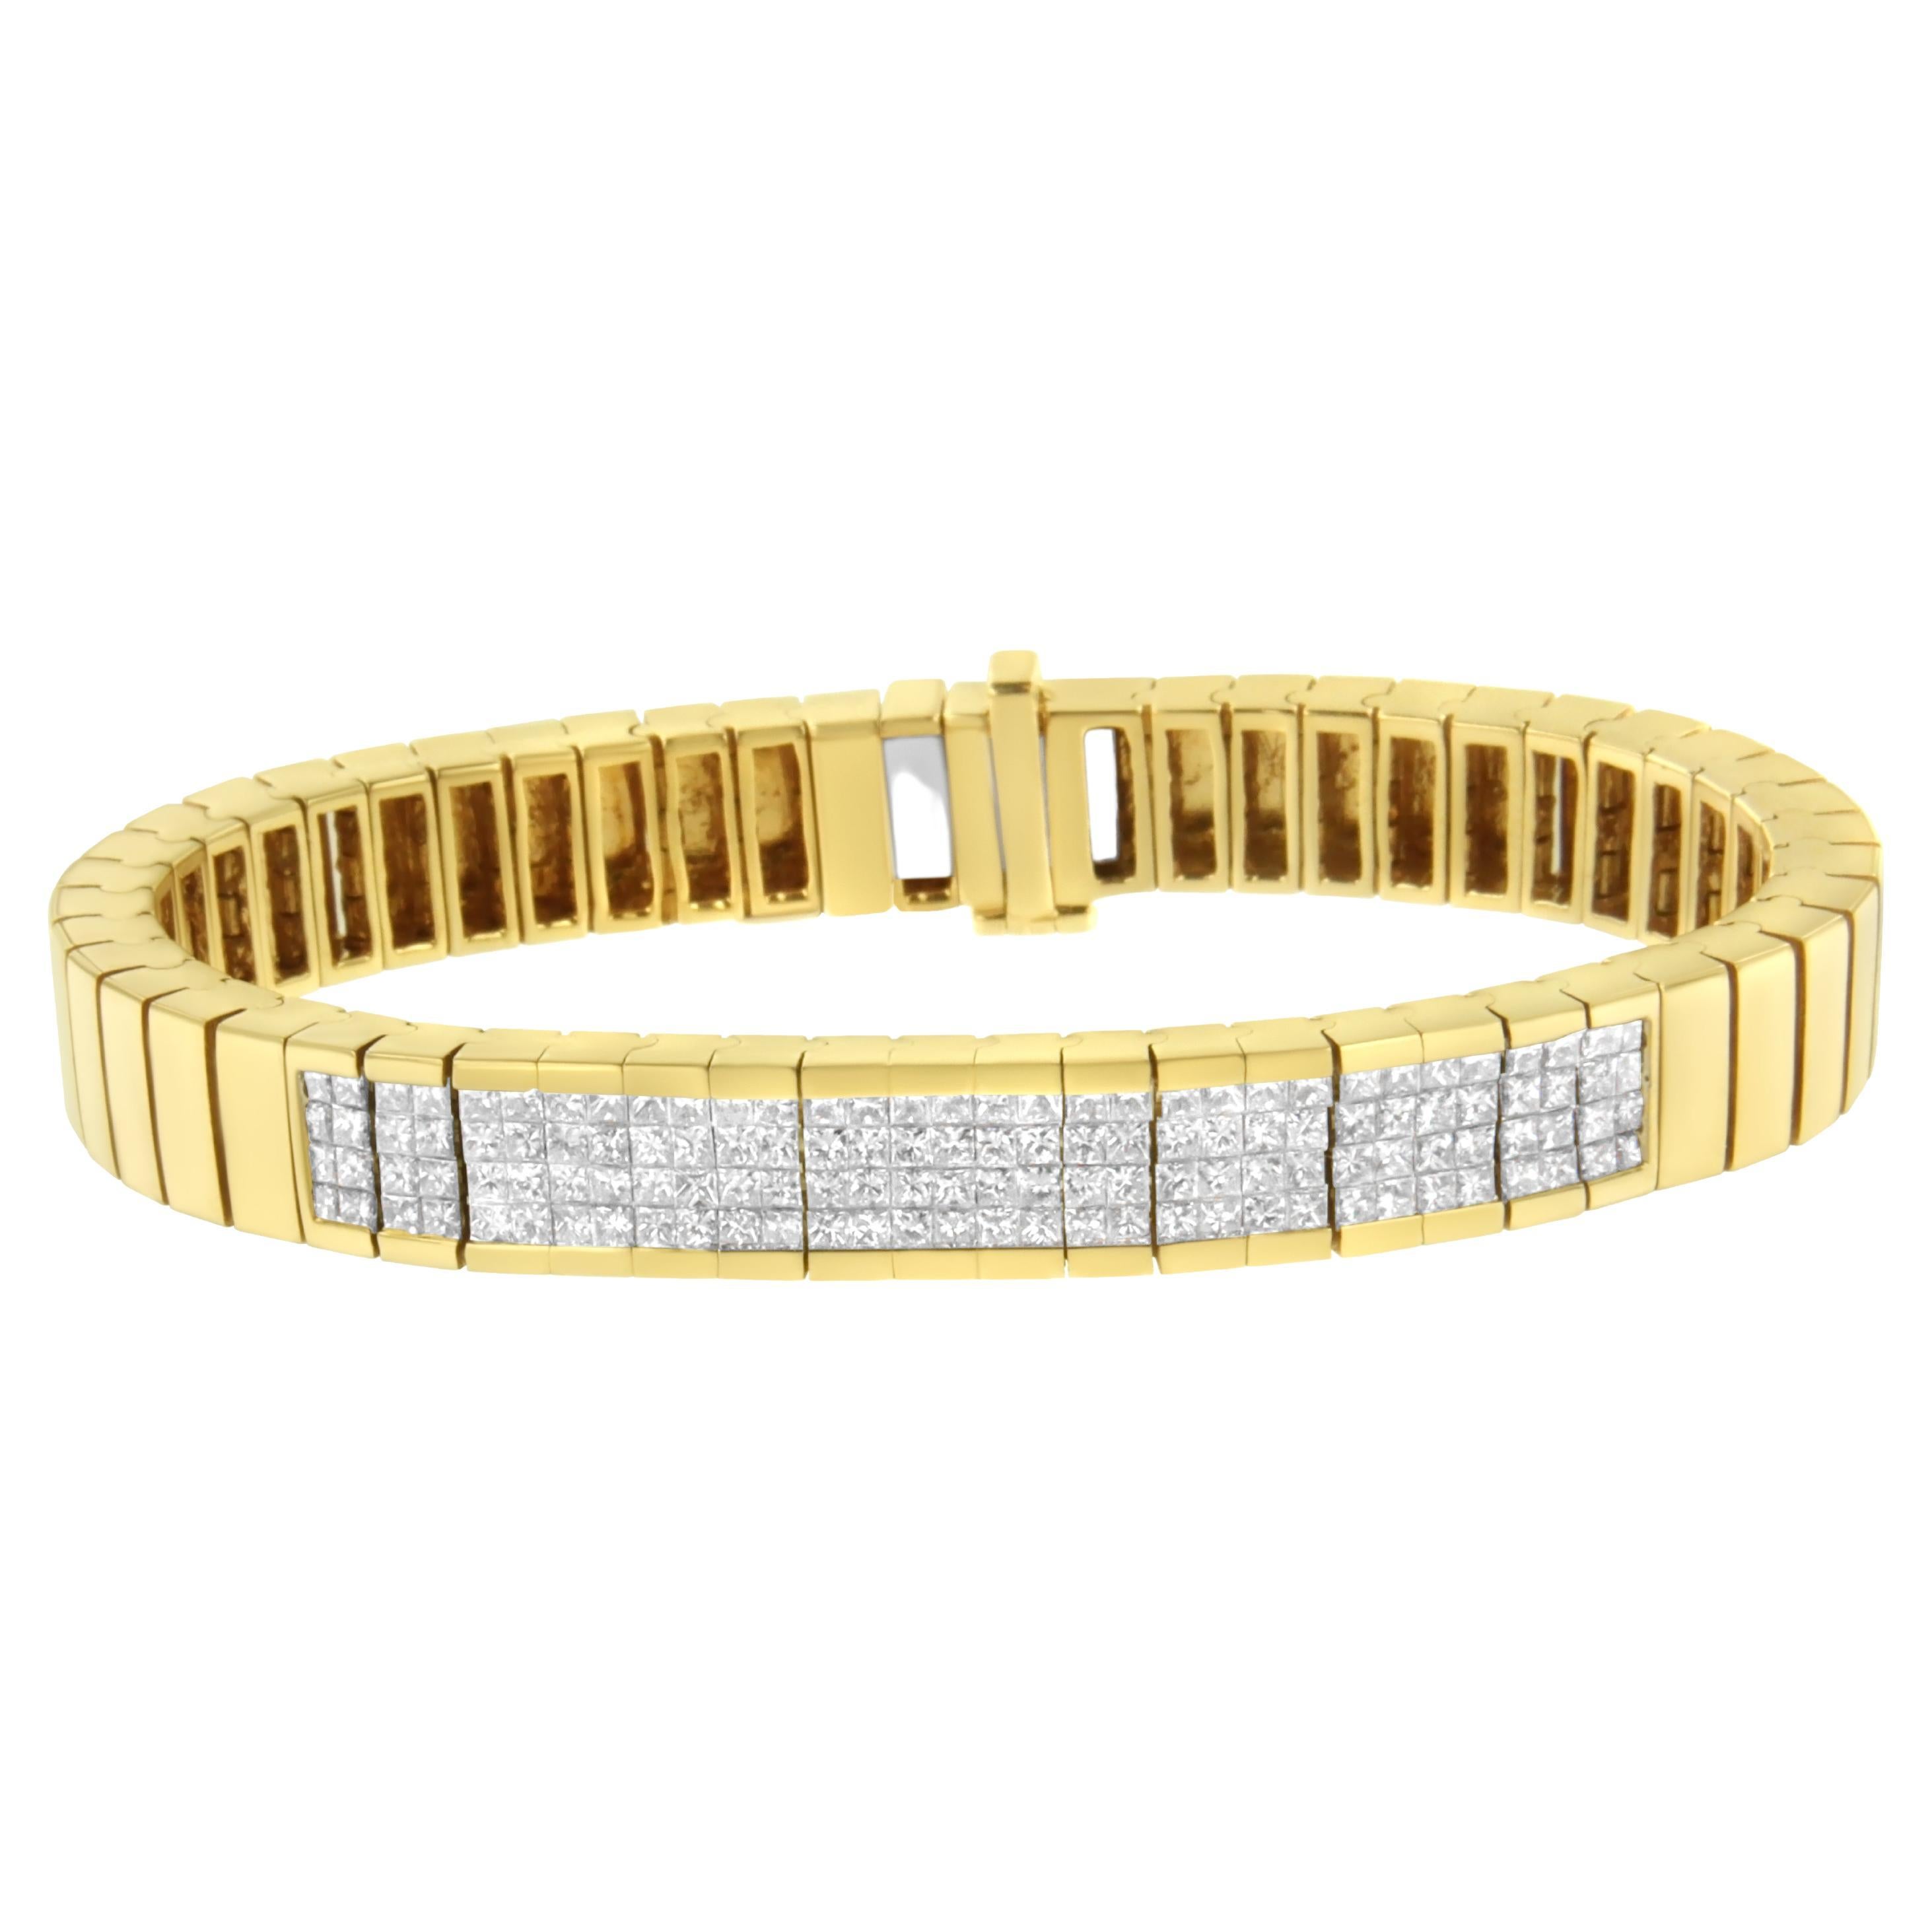 Bracelet tennis en or jaune 14 carats avec diamants taille princesse de 3 5/8 carats, serti invisible